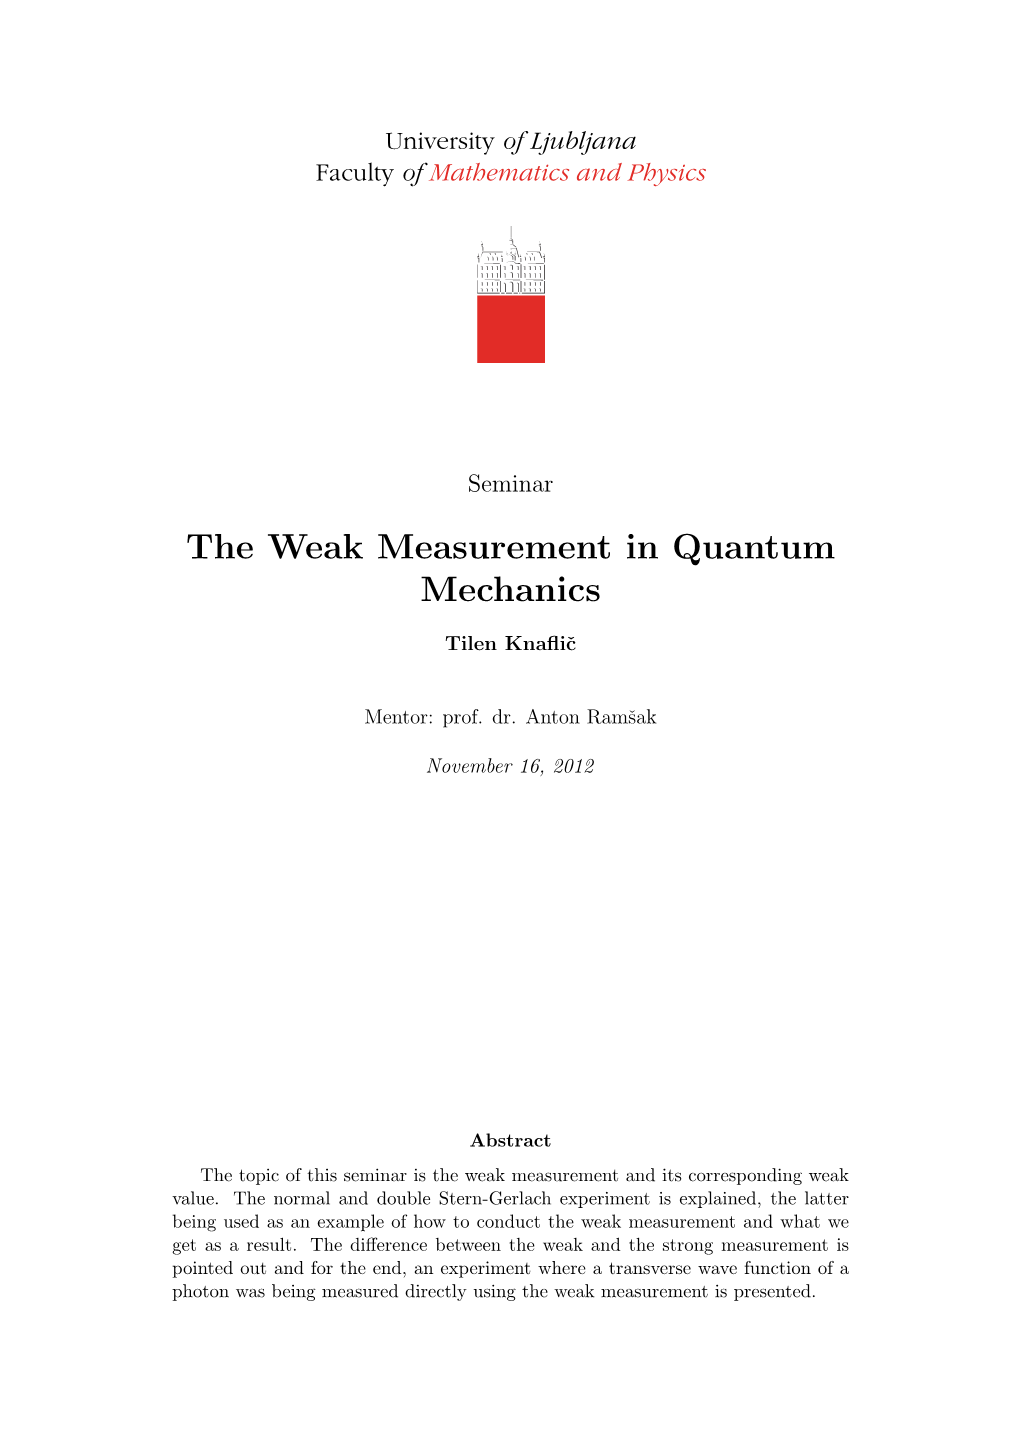 The Weak Measurement in Quantum Mechanics